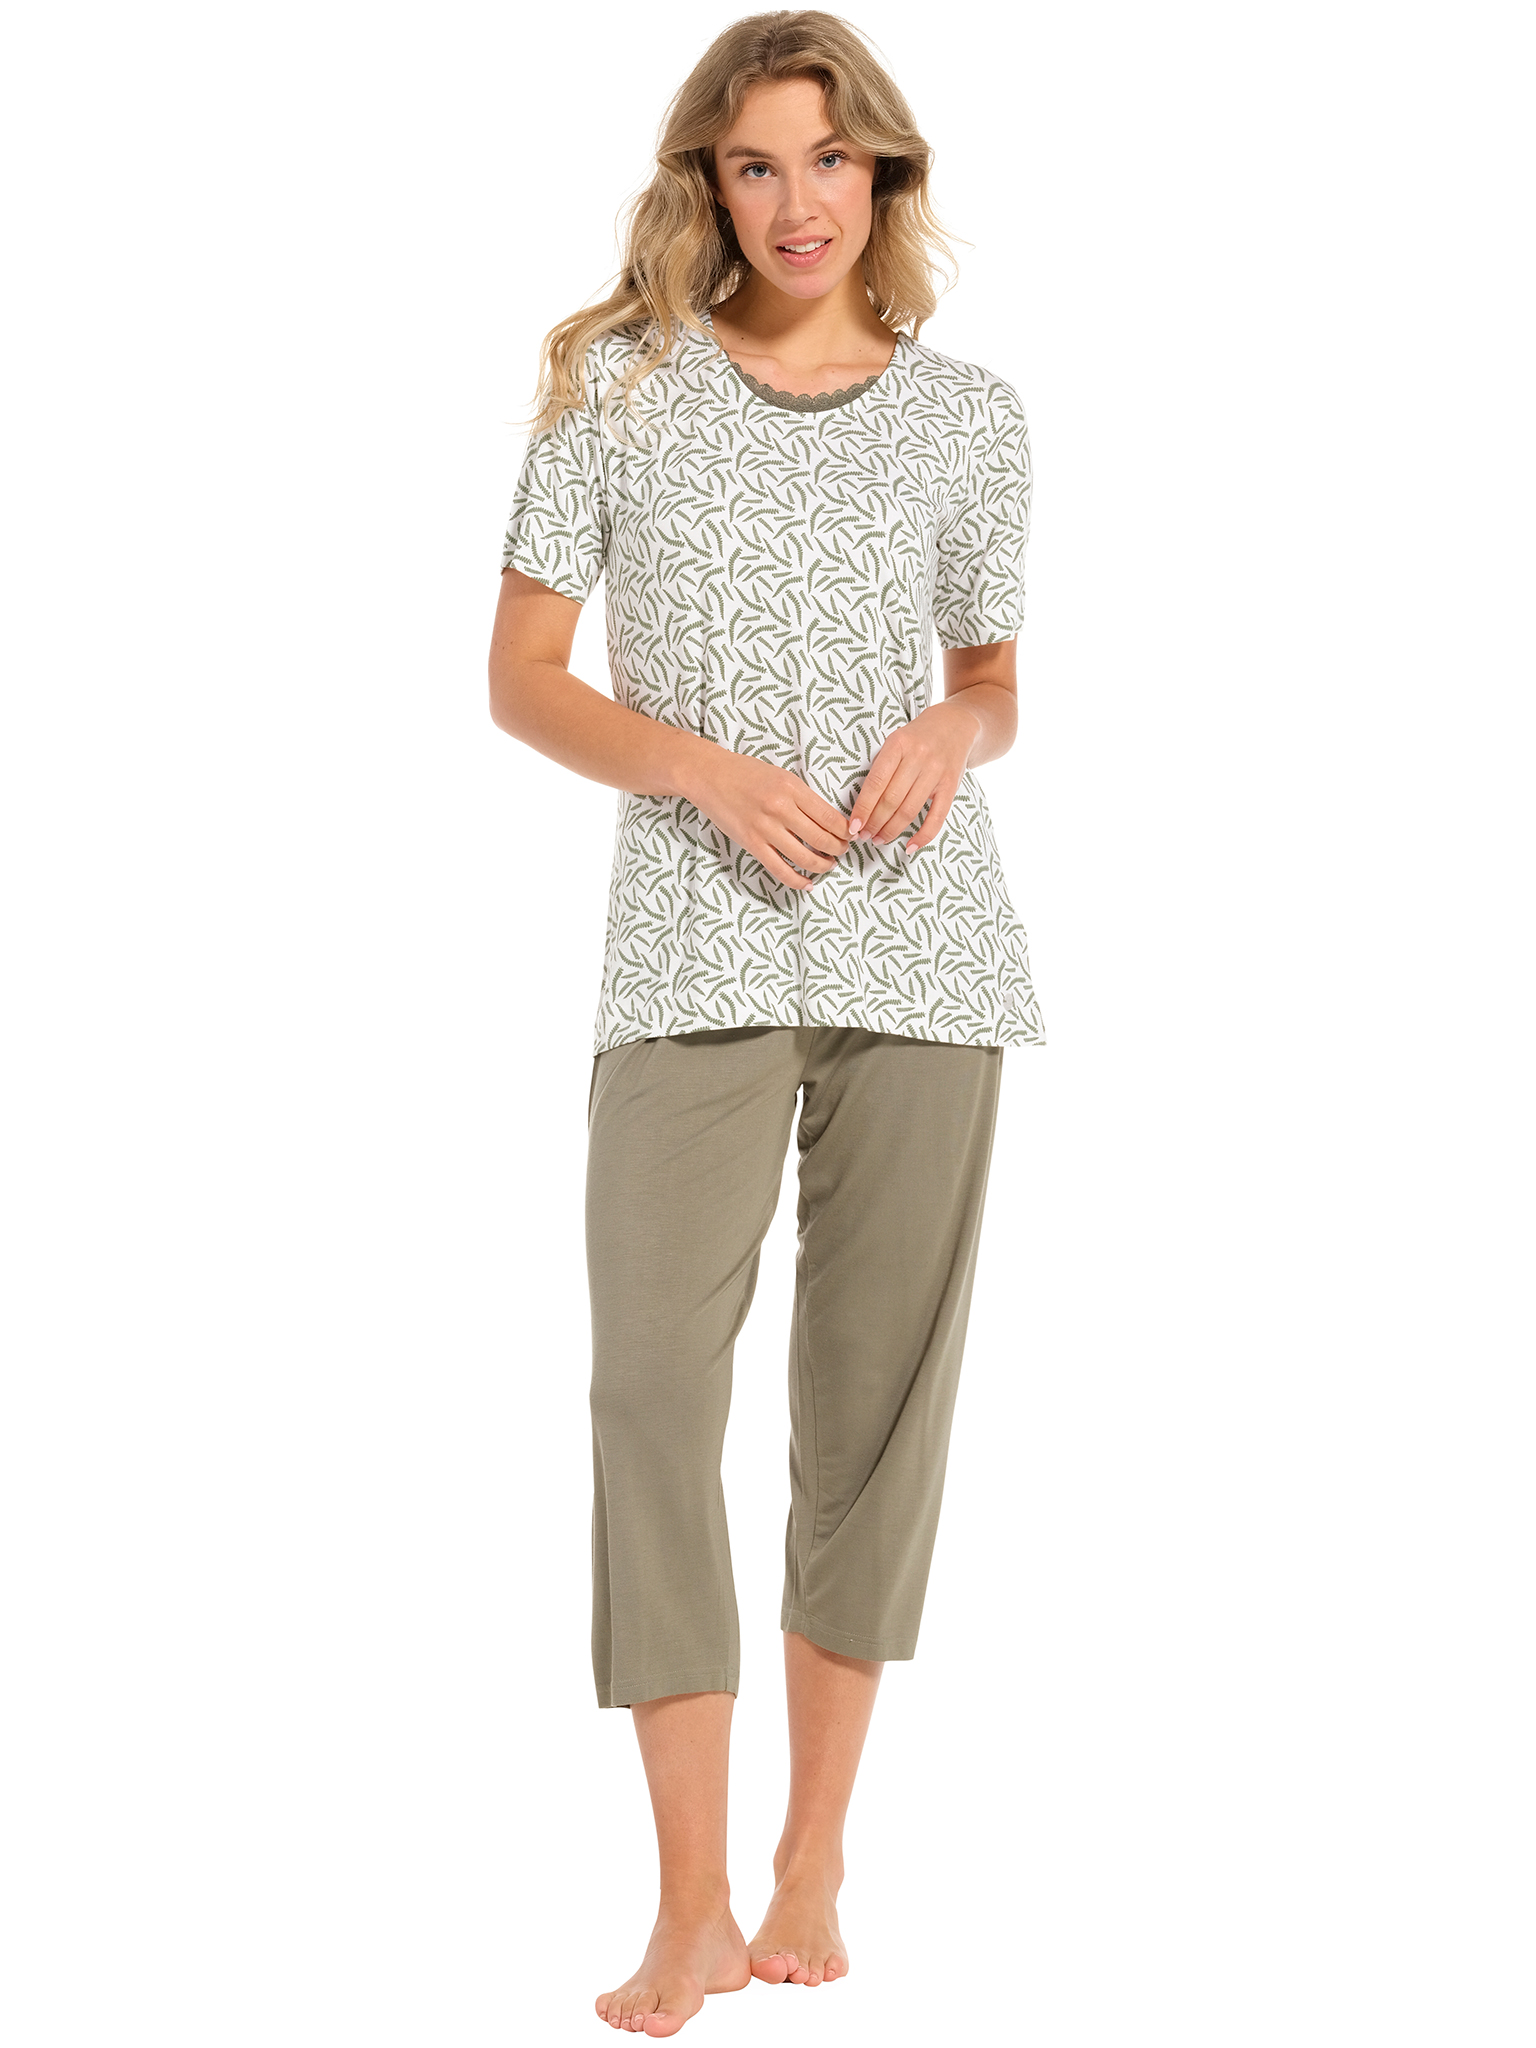 Pastunette pyjama dames - wit/donkergroen met print - 20241-148-2/720 - maat 52